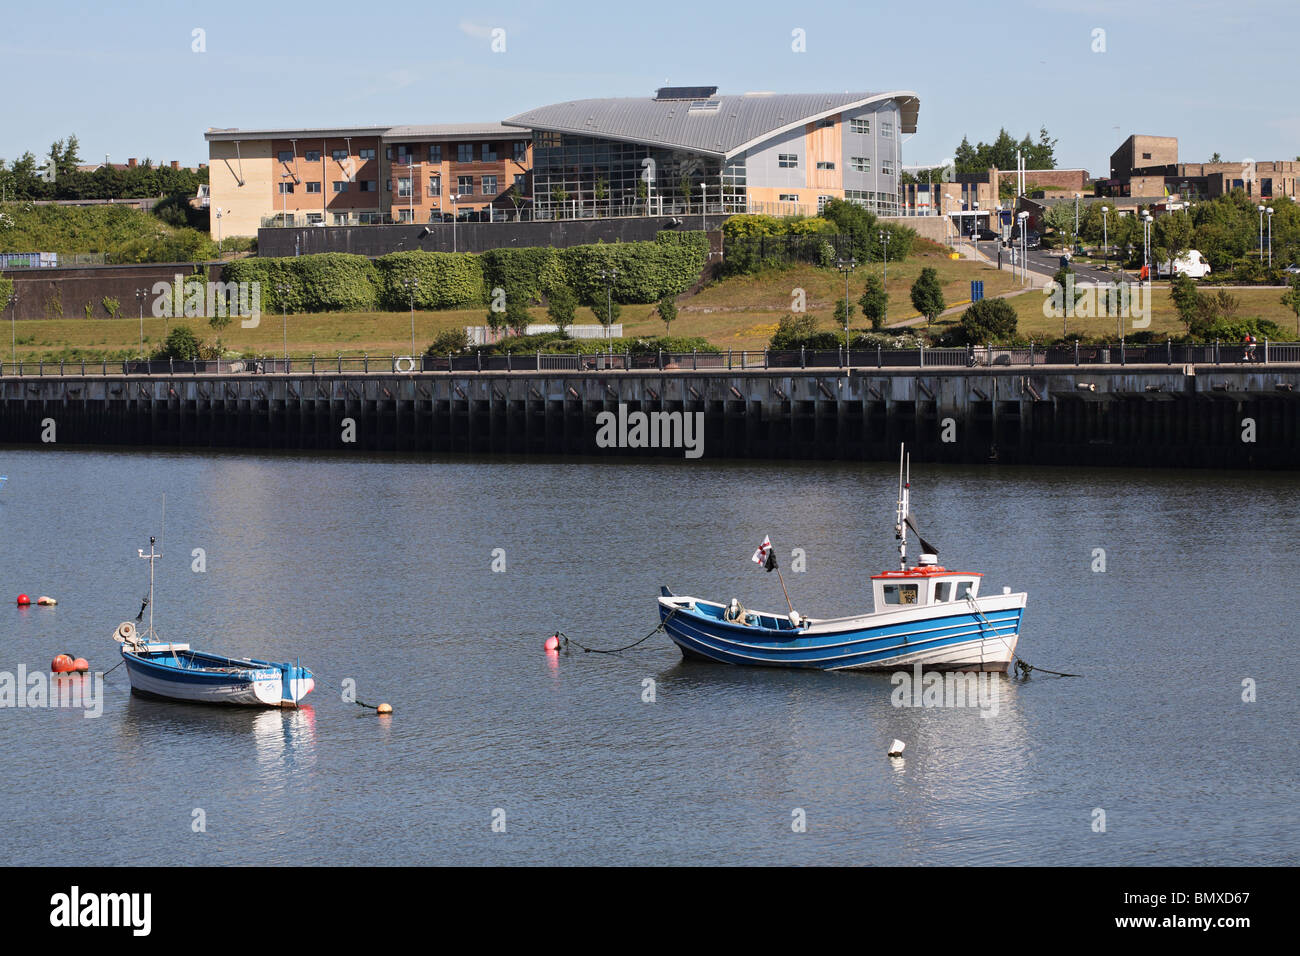 San Pietro sixth form college si vede attraverso il fiume indossare a Sunderland, England, Regno Unito Foto Stock